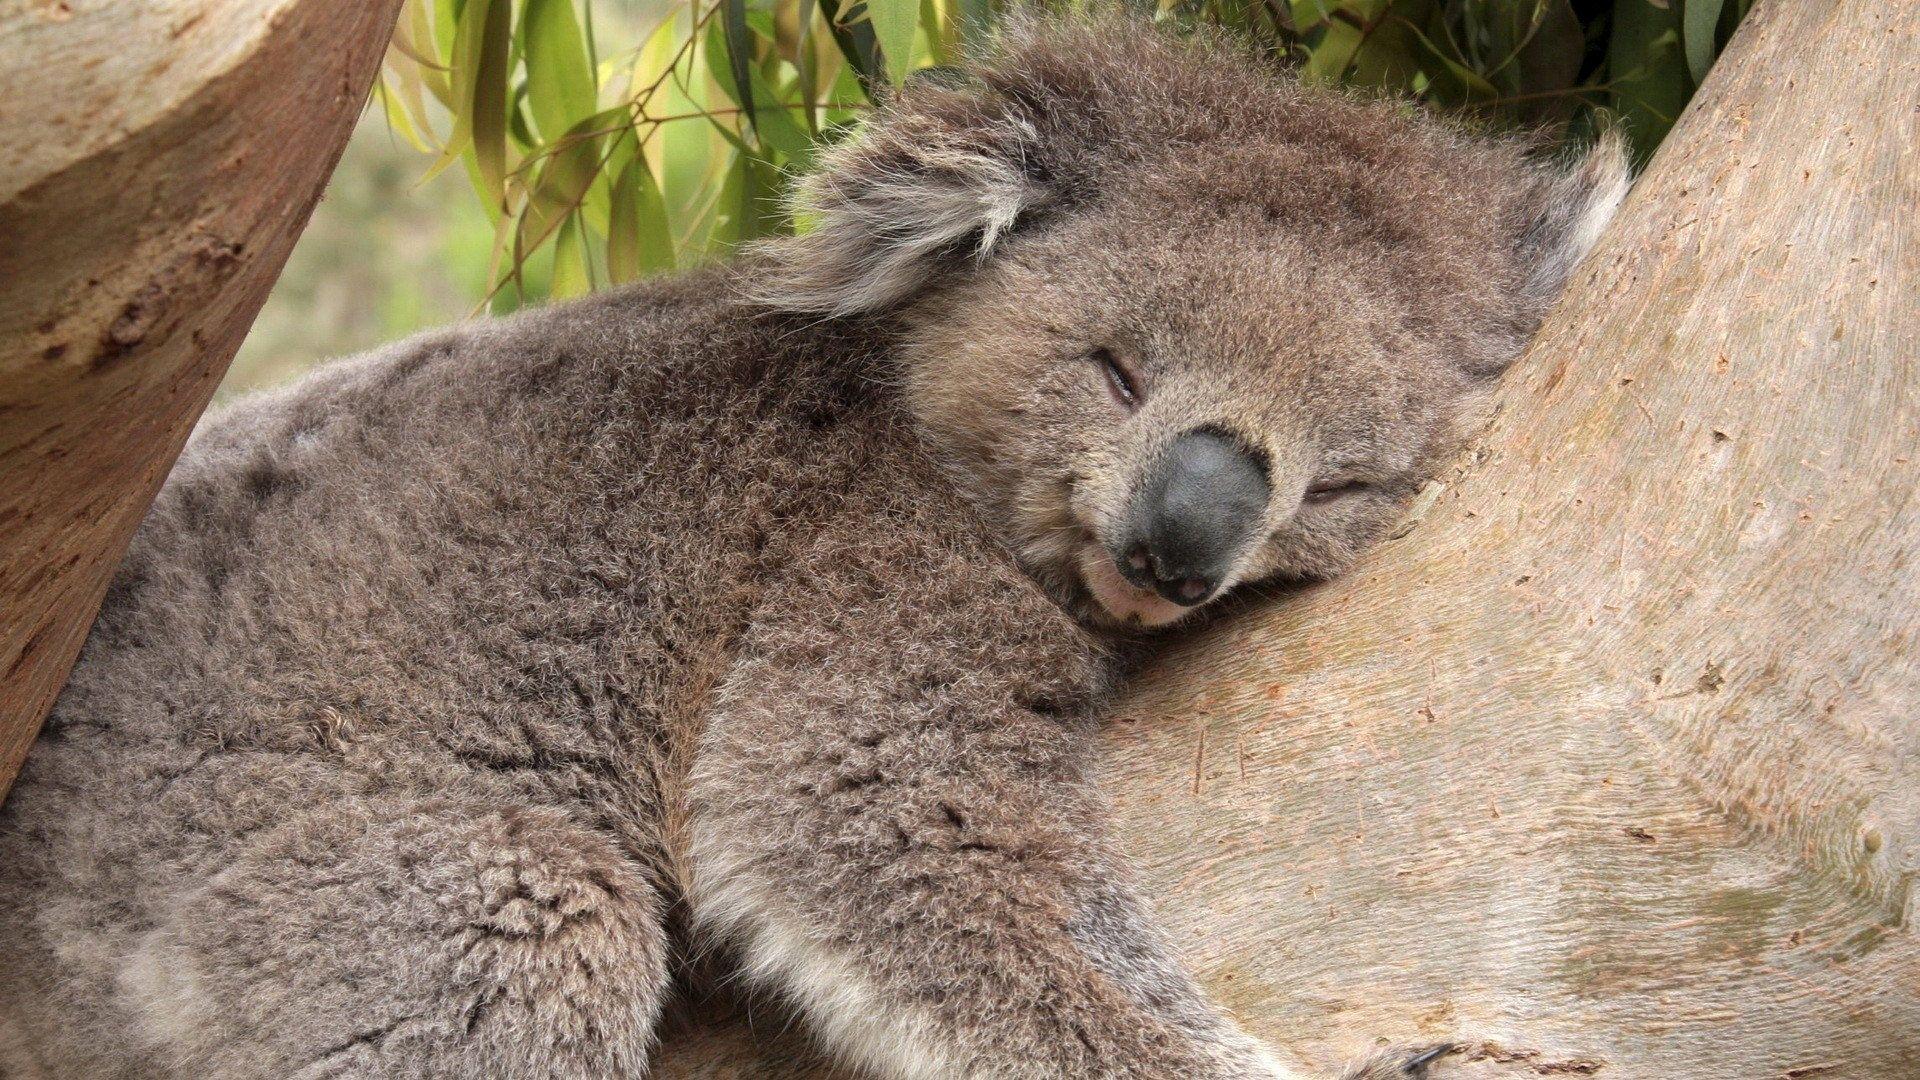 Wallpaper For > Koala Bear Sleeping Wallpaper